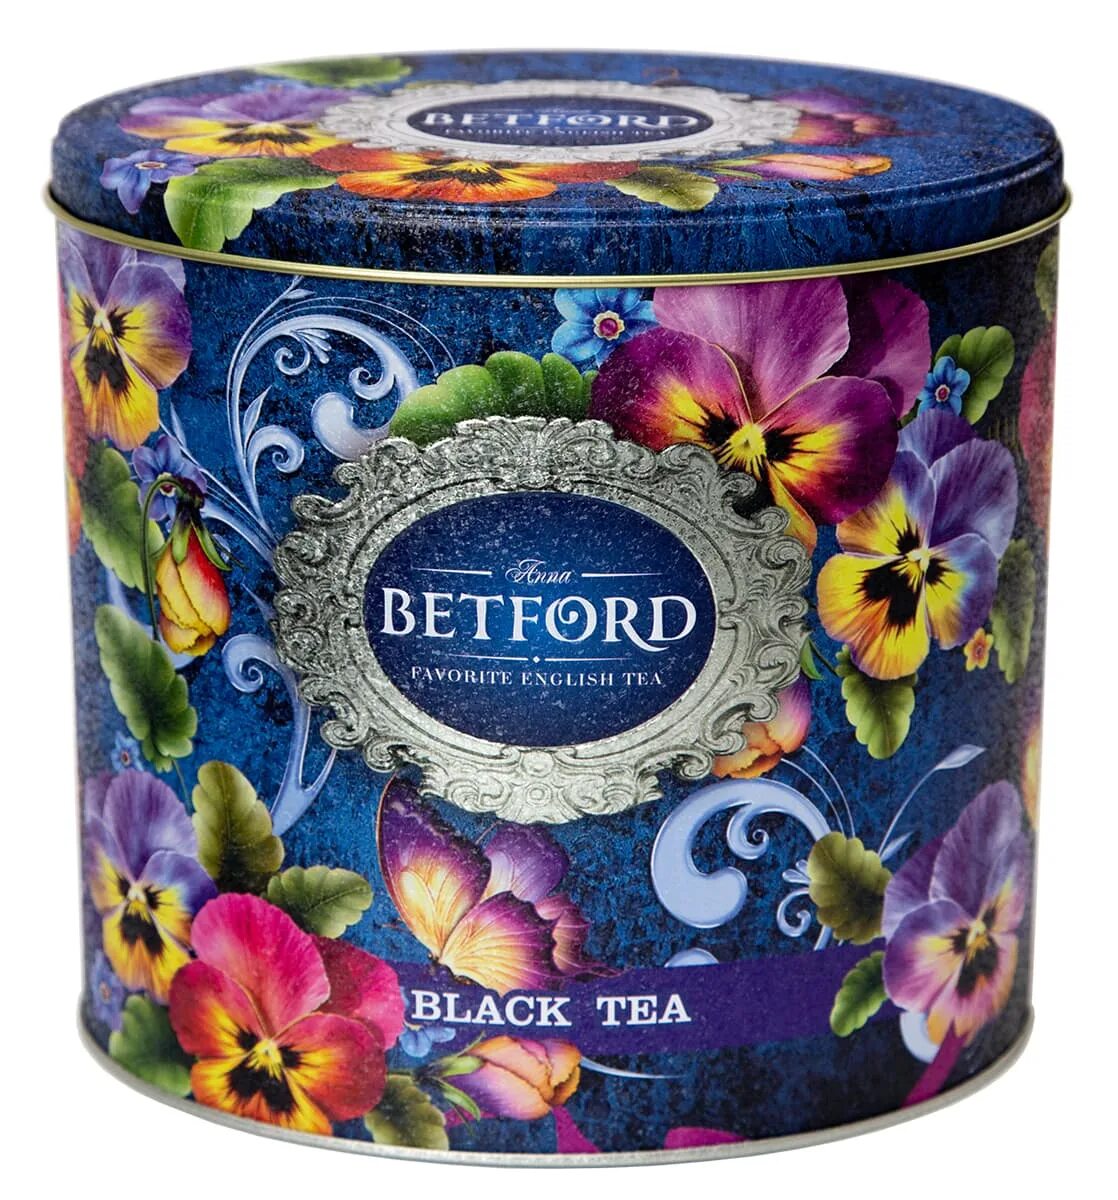 Чай черный ж б. Чай Betford овал "Виола" Ора черный ж/б 400 г. Чай Бетфорд. Anna Betford чай. Бетфорд жб чай 400 гр Восточный сад.